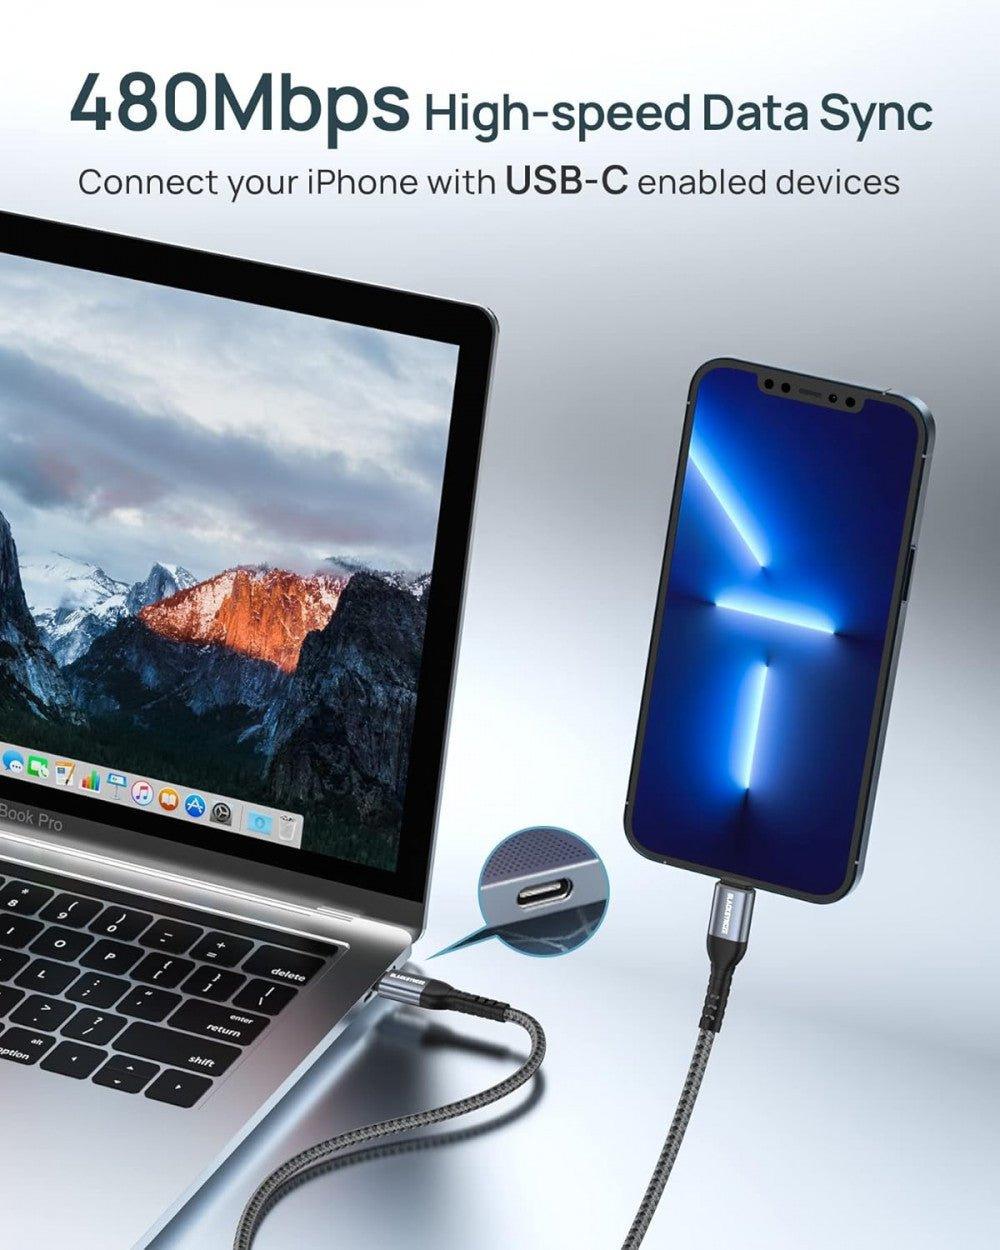 BLACKSYNCZE USB C - Lightning Gyors Töltő Kábel, MFi Tanúsítvánnyal, iPhone 13/12/11/XR/XS/X/8 Plus/SE 2020-hoz, Szürke Újracsomagolt termék - Outlet24